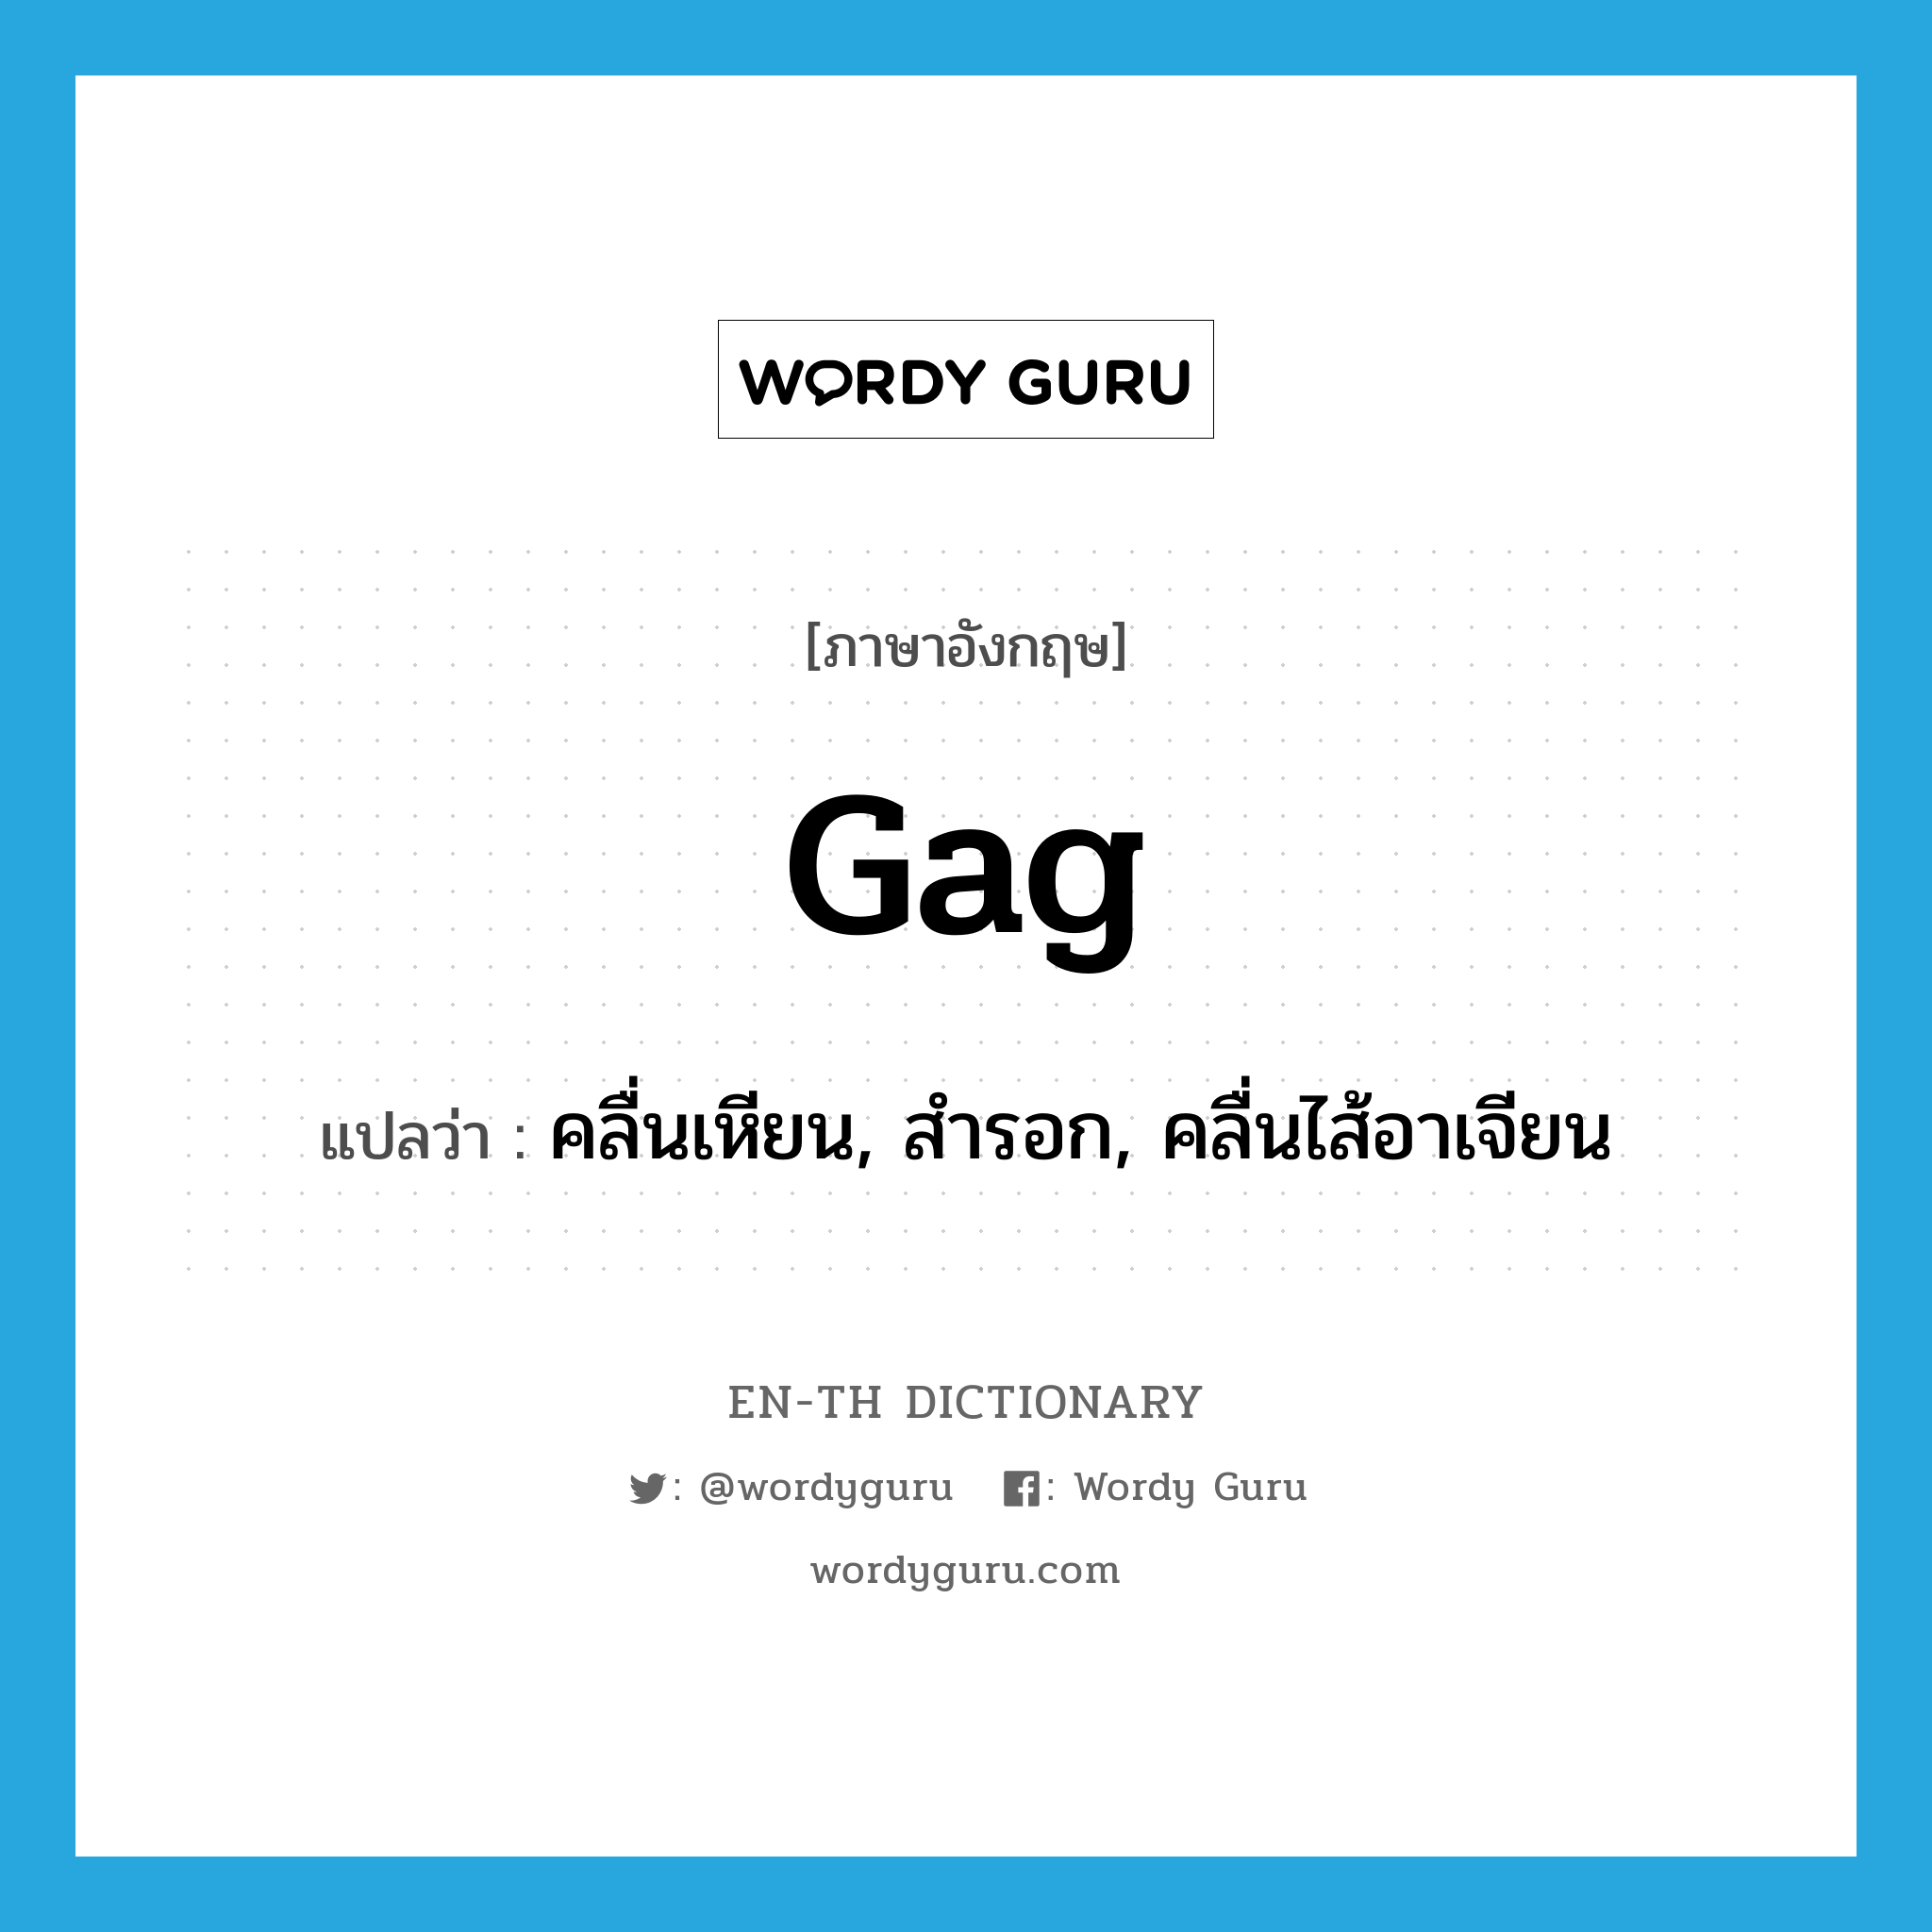 gag แปลว่า?, คำศัพท์ภาษาอังกฤษ gag แปลว่า คลื่นเหียน, สำรอก, คลื่นไส้อาเจียน ประเภท VI หมวด VI